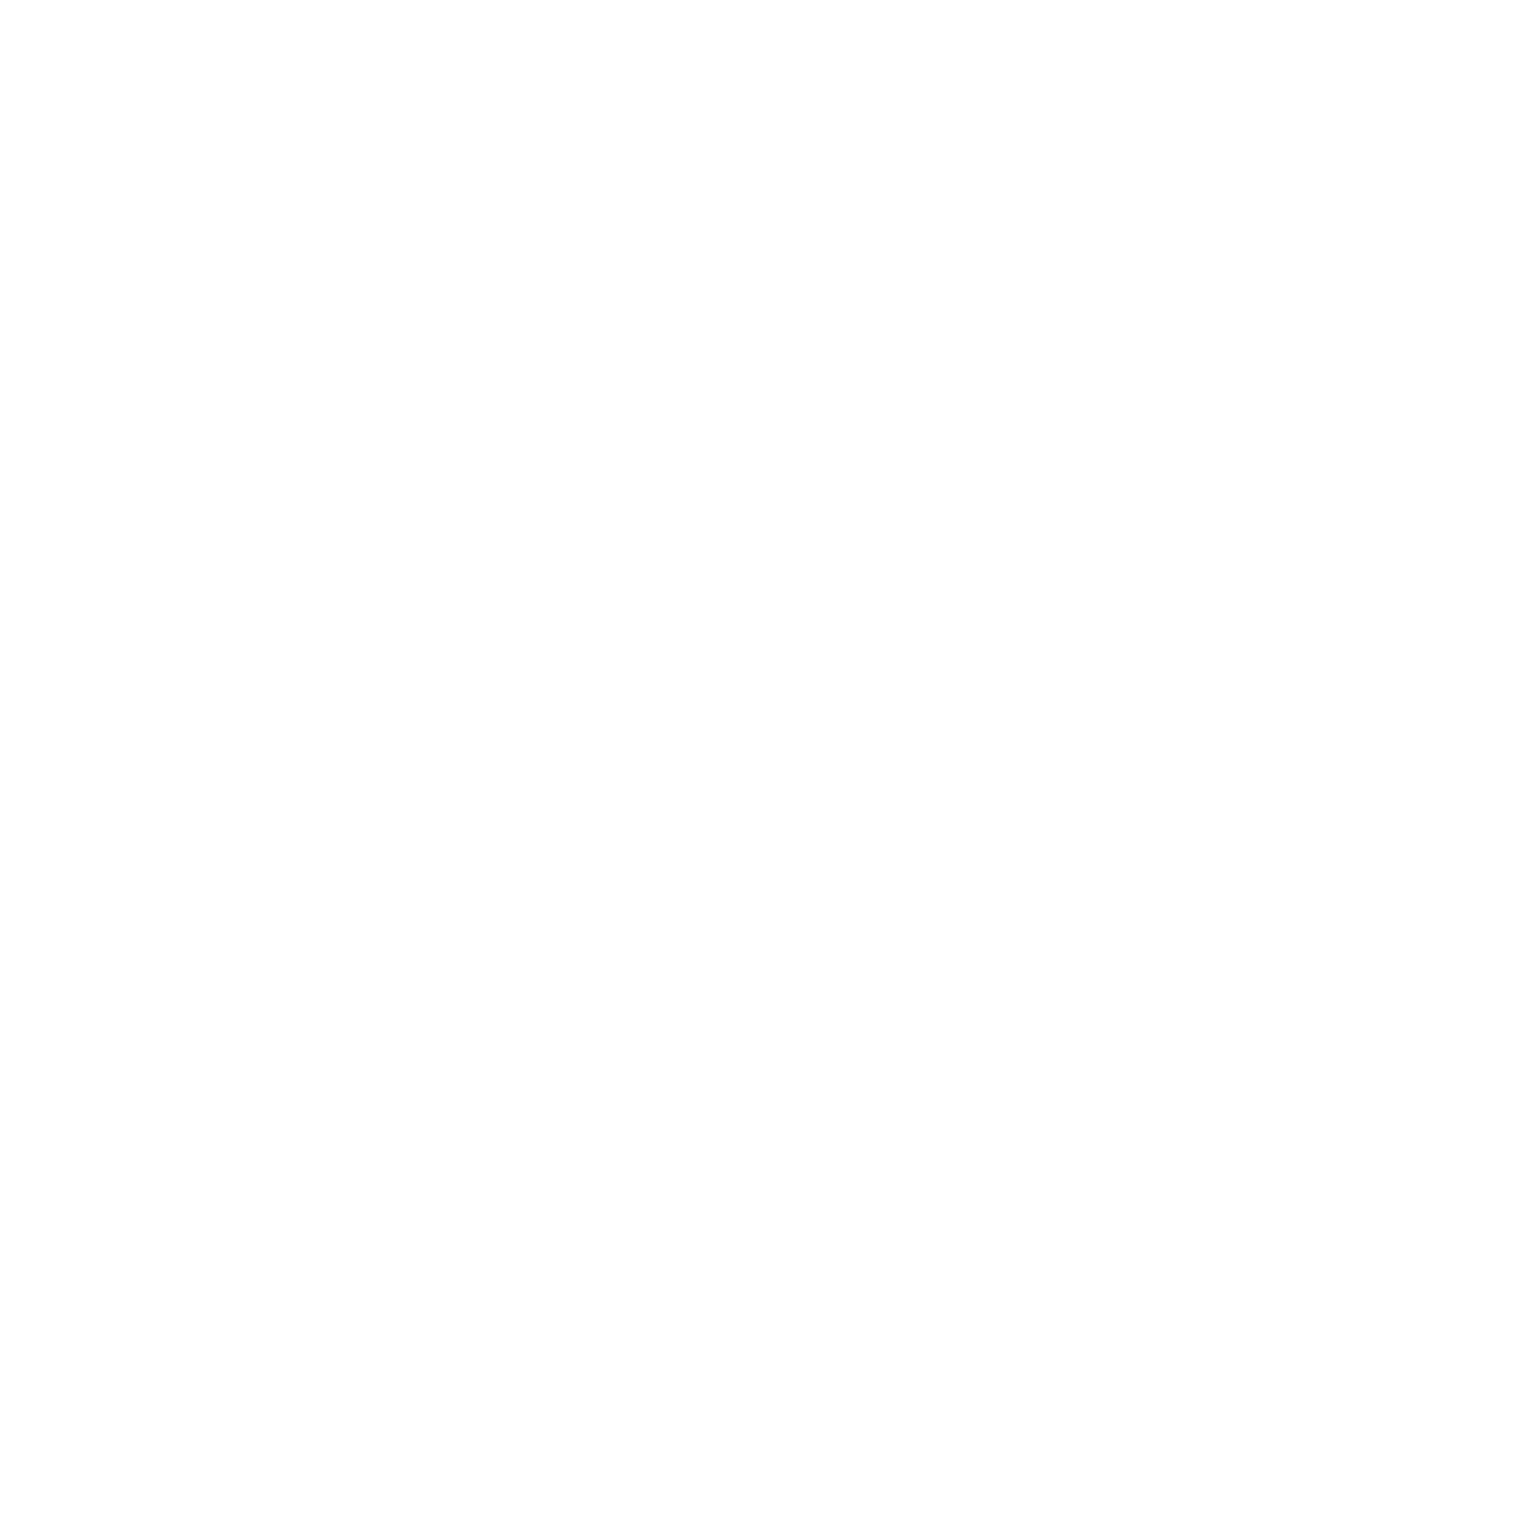 Markel logo for dark backgrounds (transparent PNG)